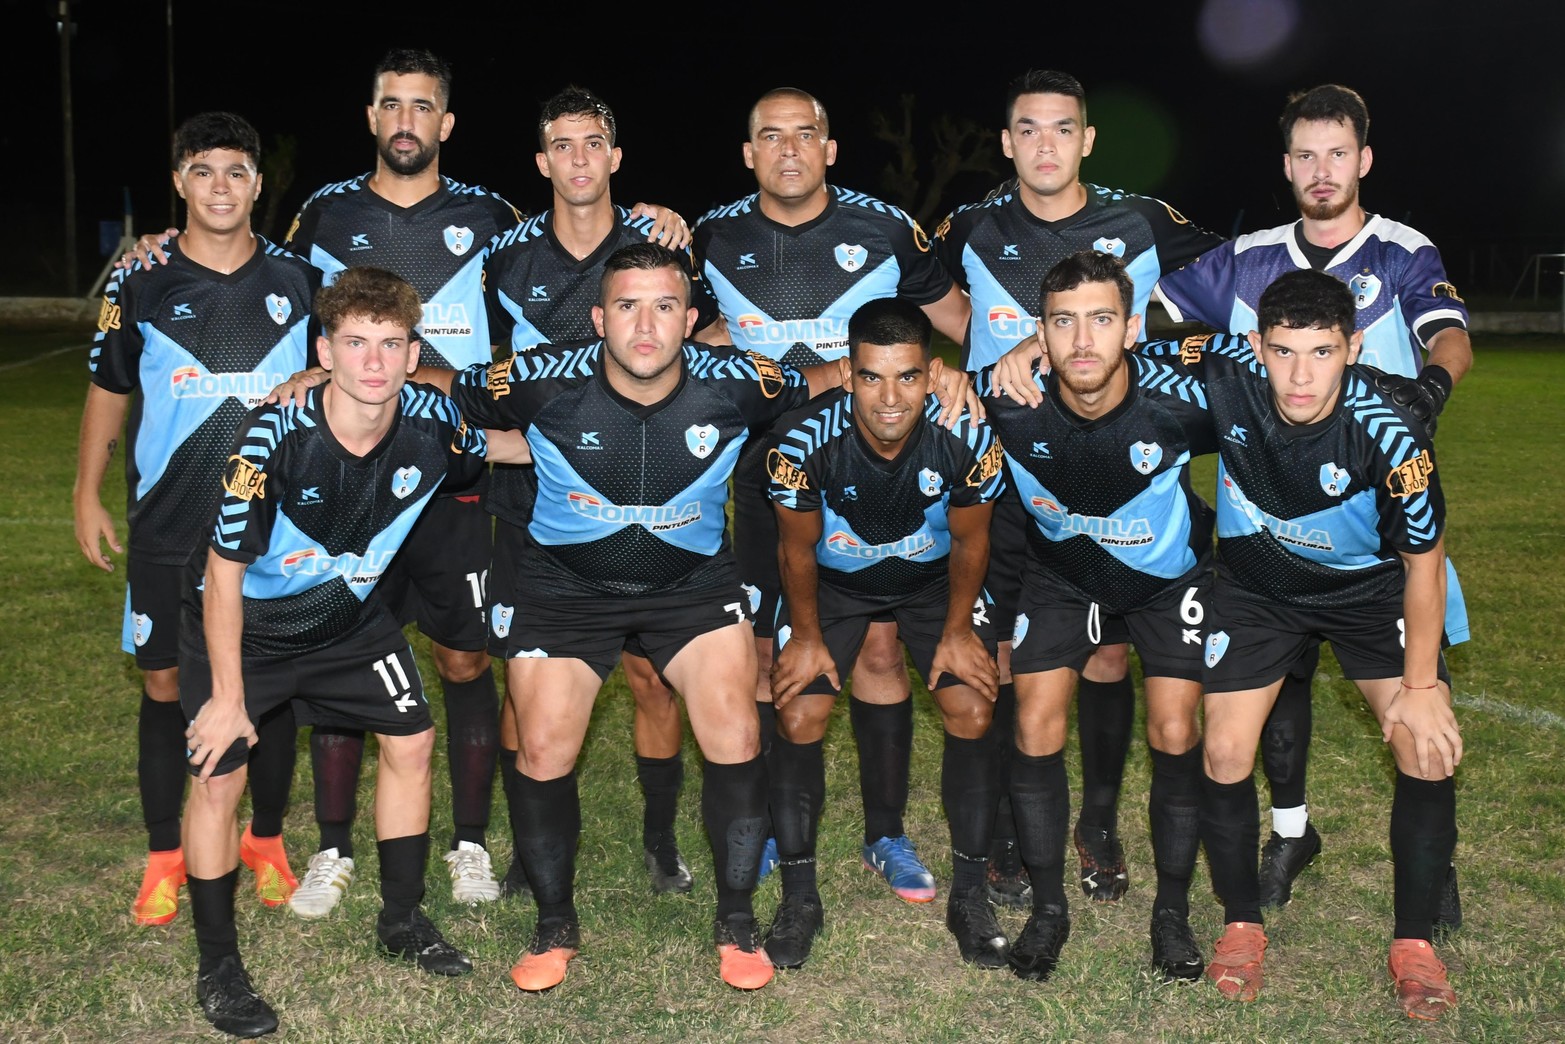 El torneo de fútbol "Tiburón Lagunero" jugó la tercera fecha. El local, Ciclón Racing ganó 2 a 1 a Unión. 